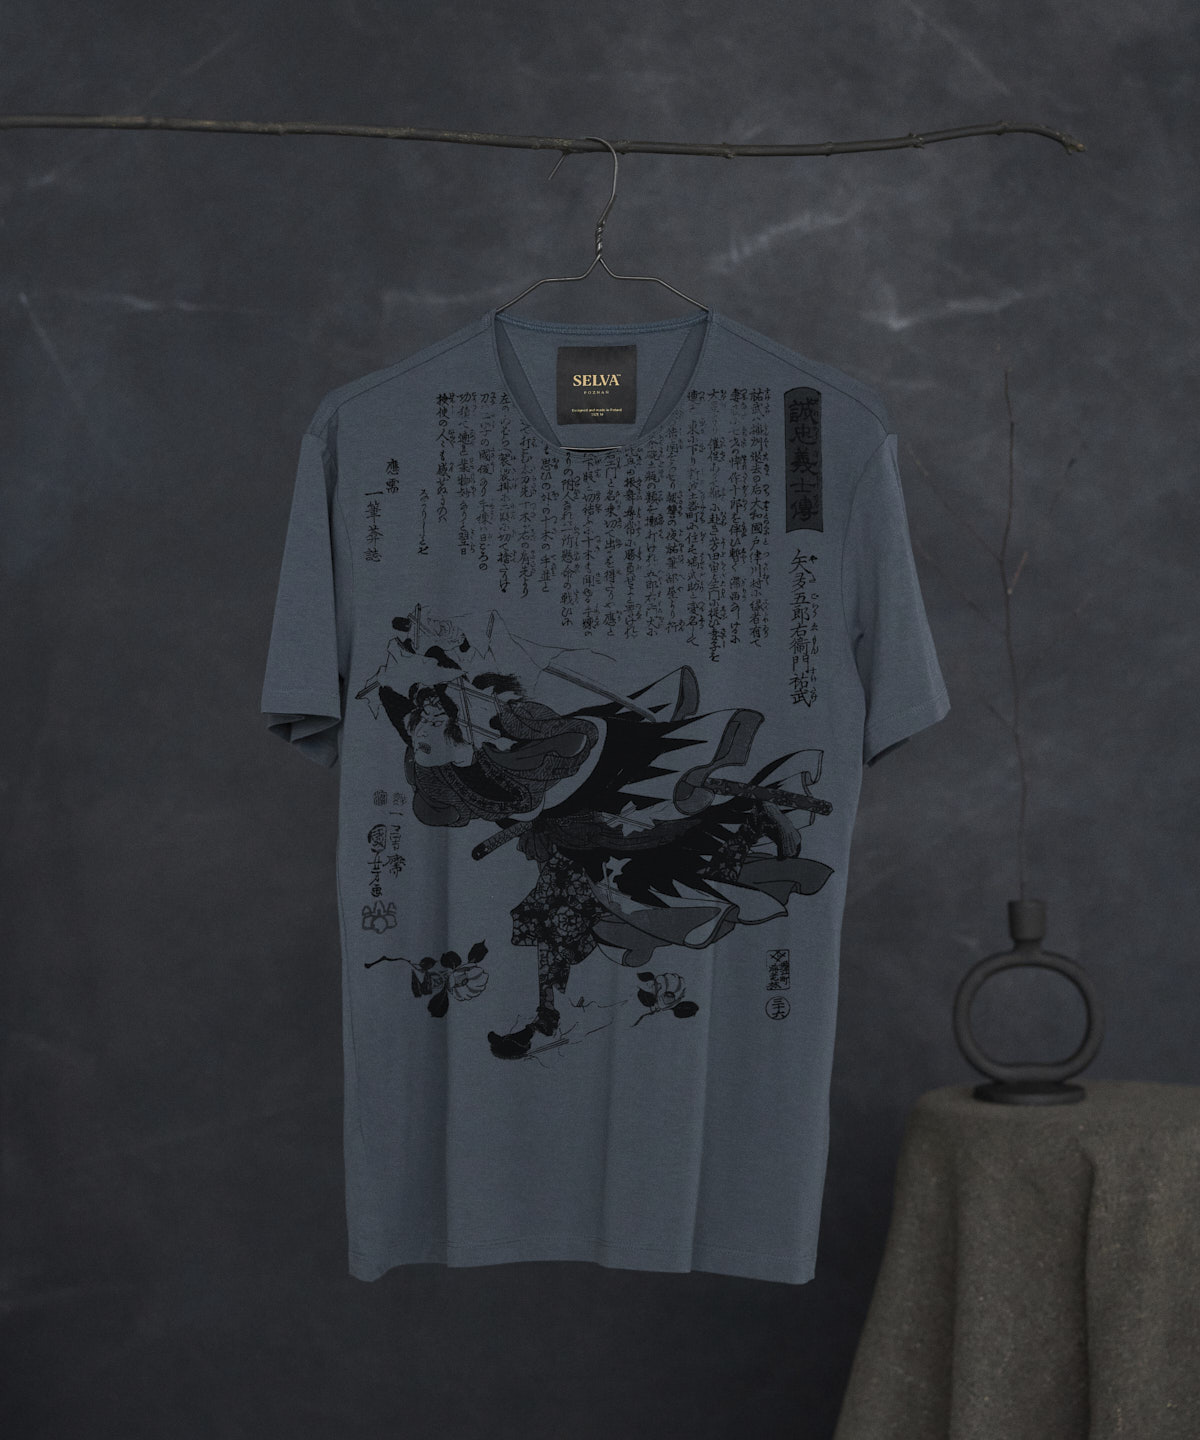 Utagawa Kuniyoshi no.92 dark cool gray t-shirt men